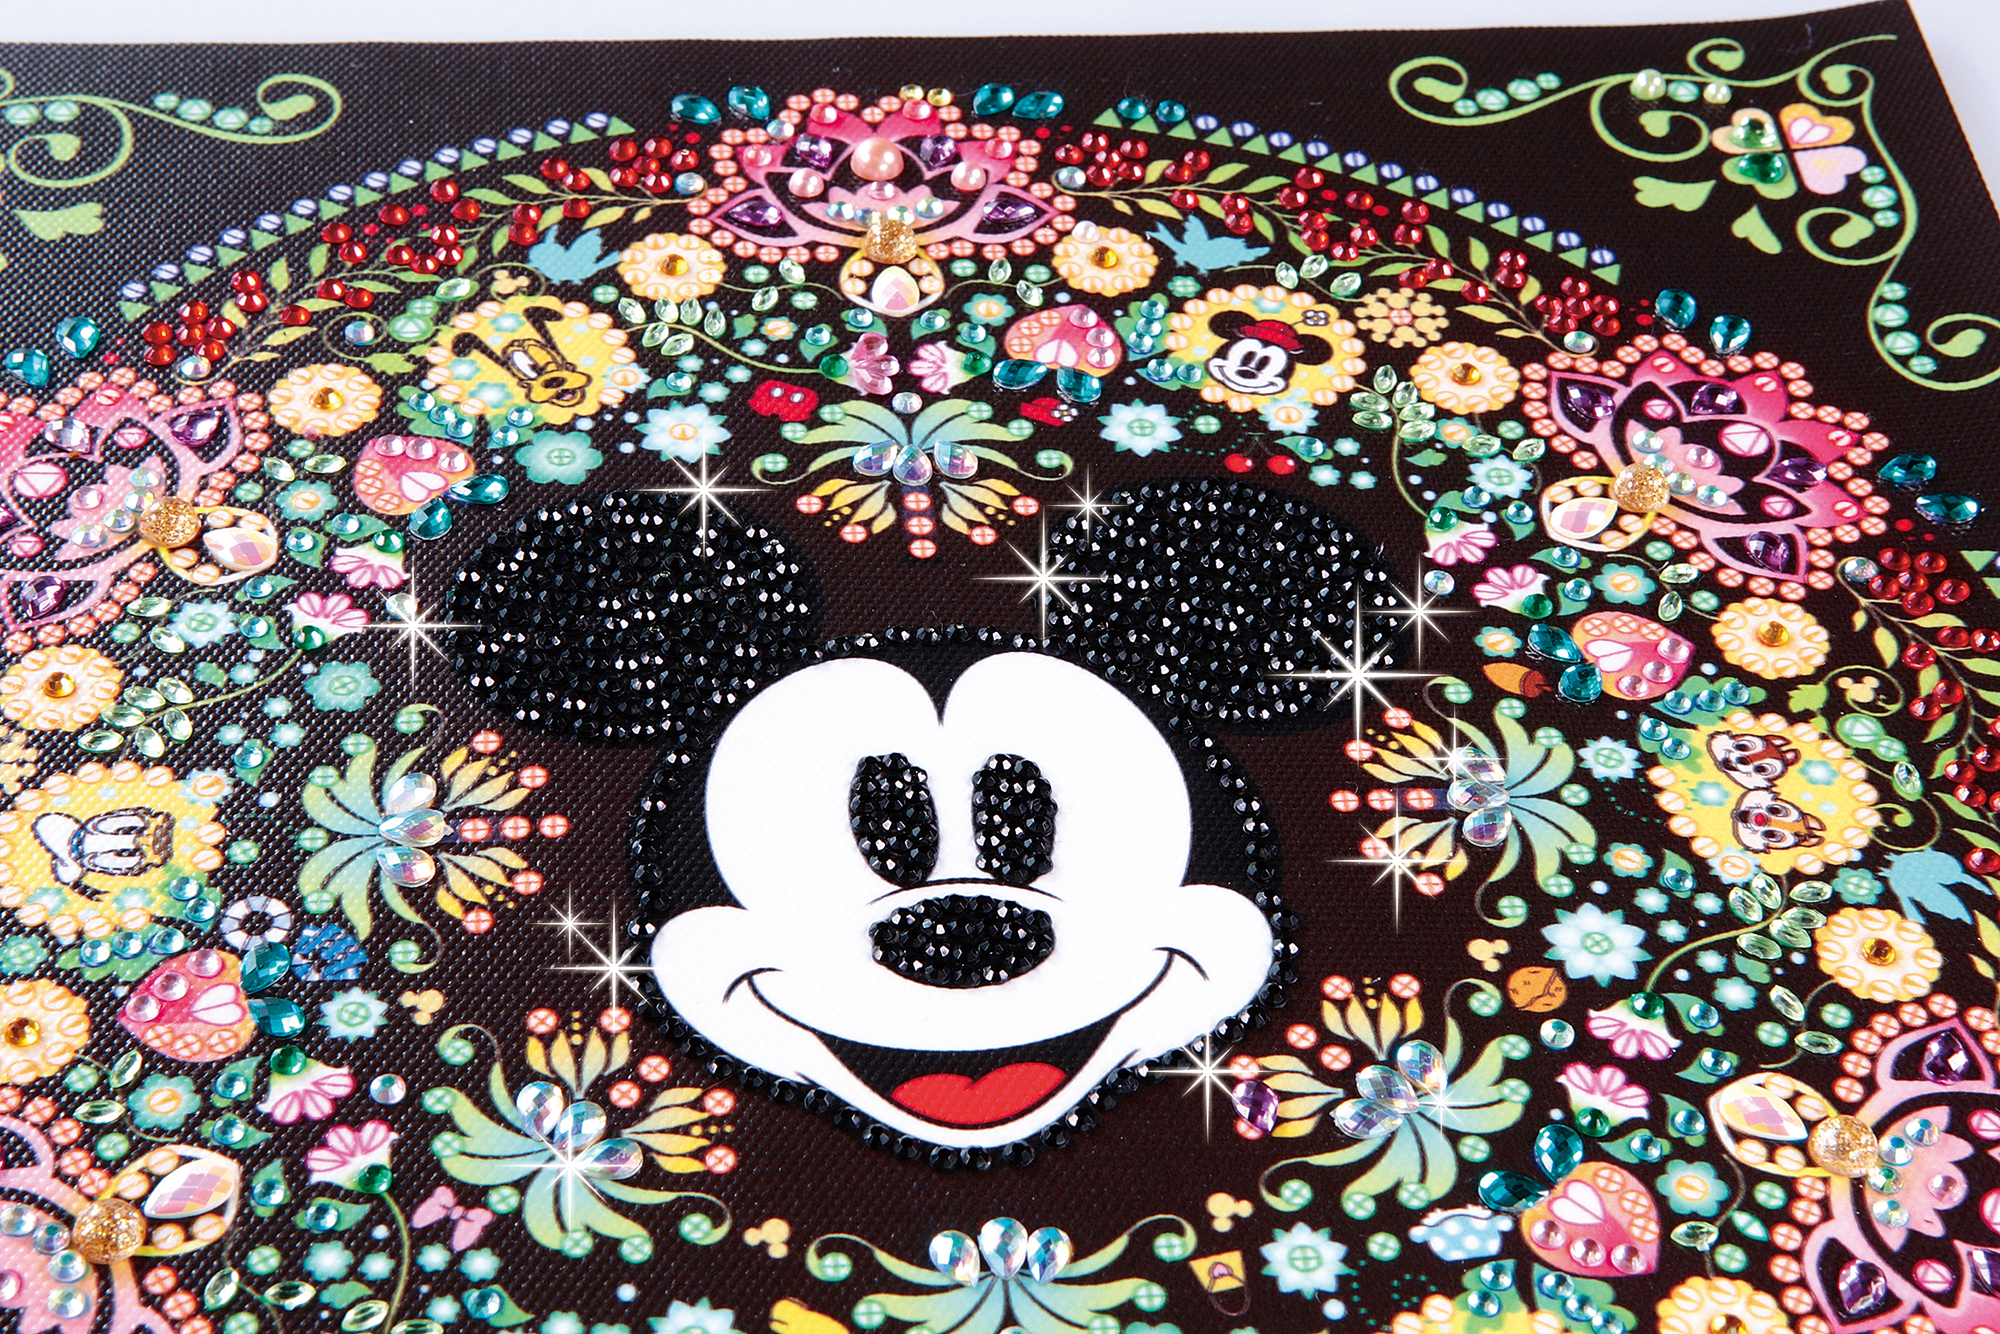 「人気運の象徴のミッキーマウスを中心とした素敵な模様 」画像